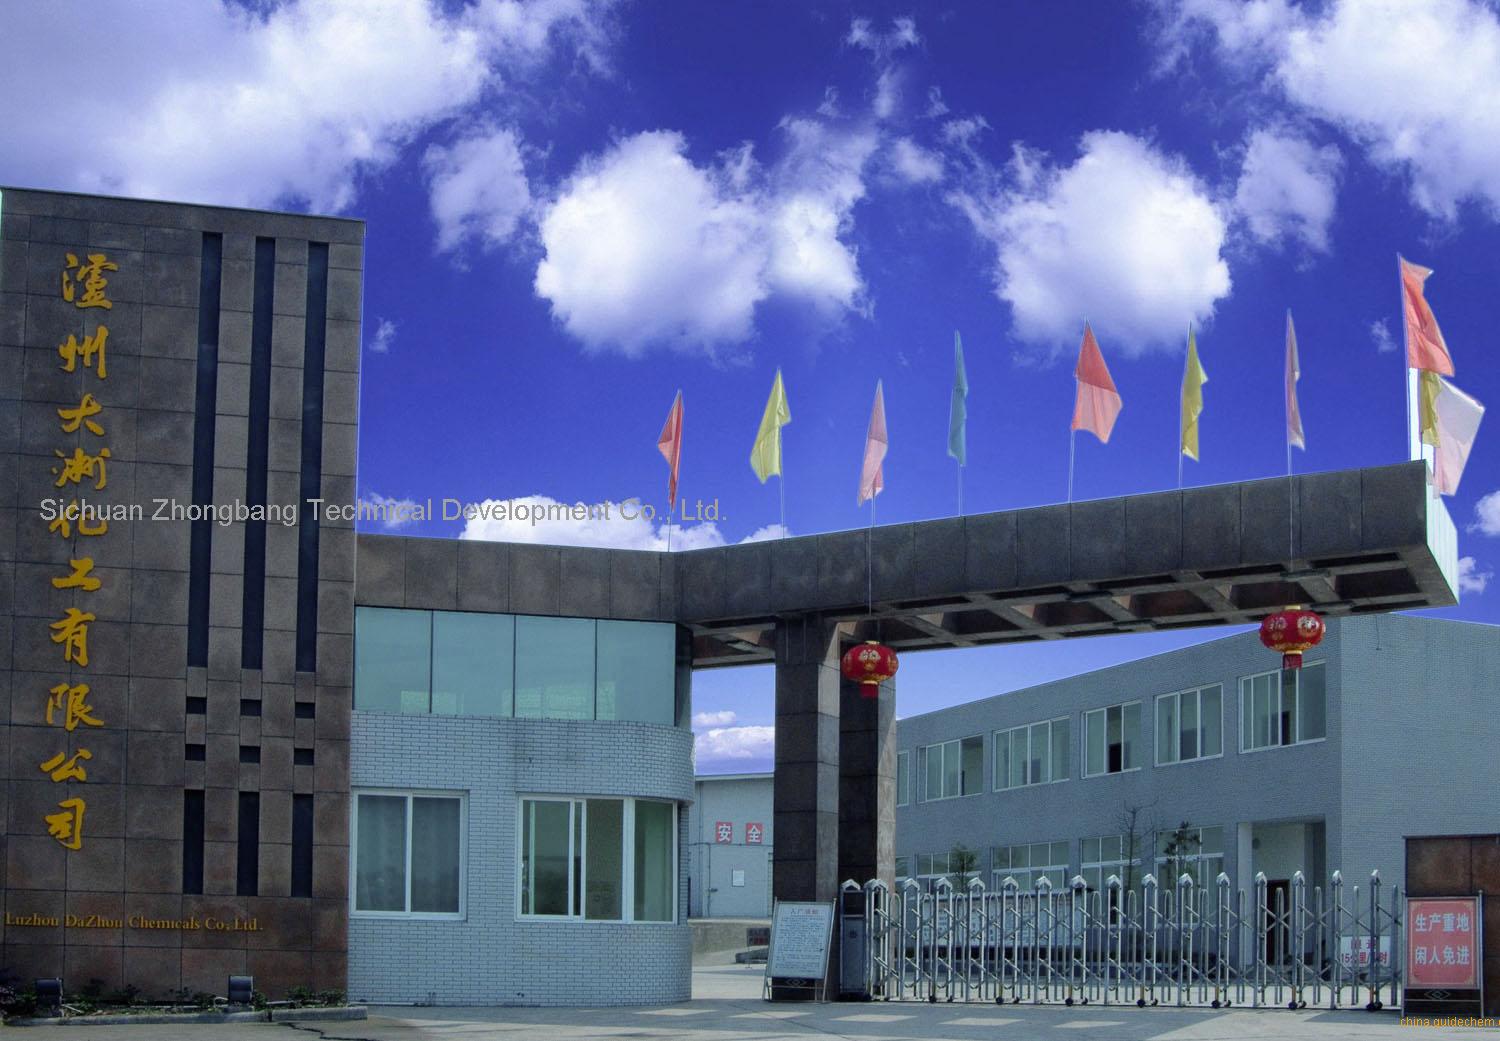 Sichuan Zhongbang Technical Development Co., Ltd.